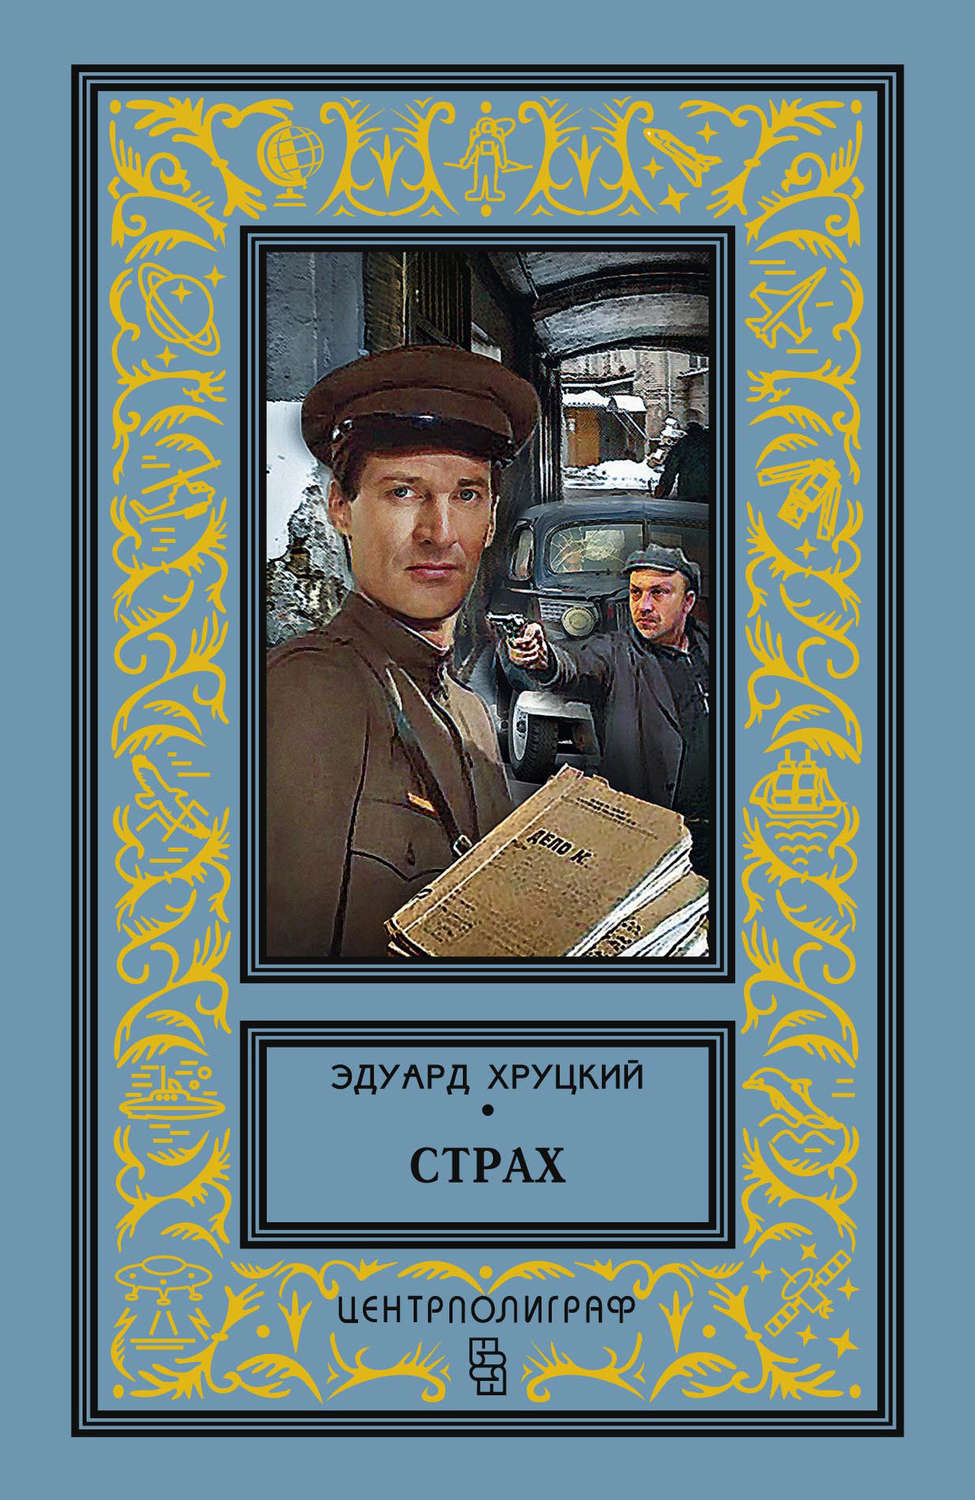 Скачать книги бесплатно fb2 детективы советские